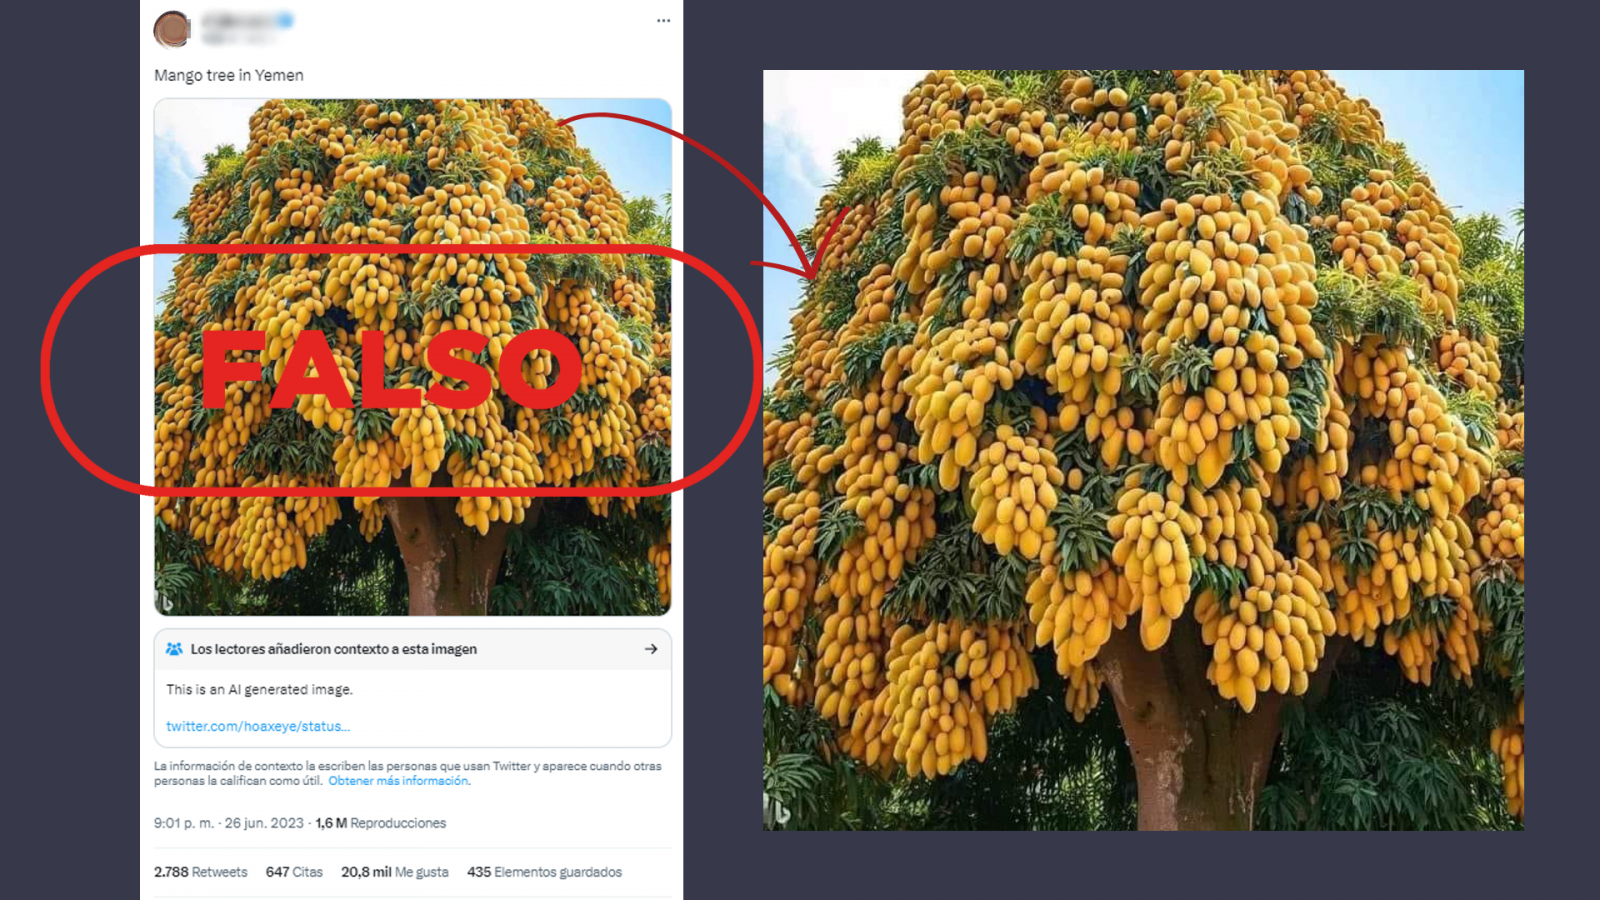 Mensaje de Twitter que comparte la imagen de un árbol de mangos generado por Inteligencia Artificial, con el sello Falso de VerificaRTVE en rojo